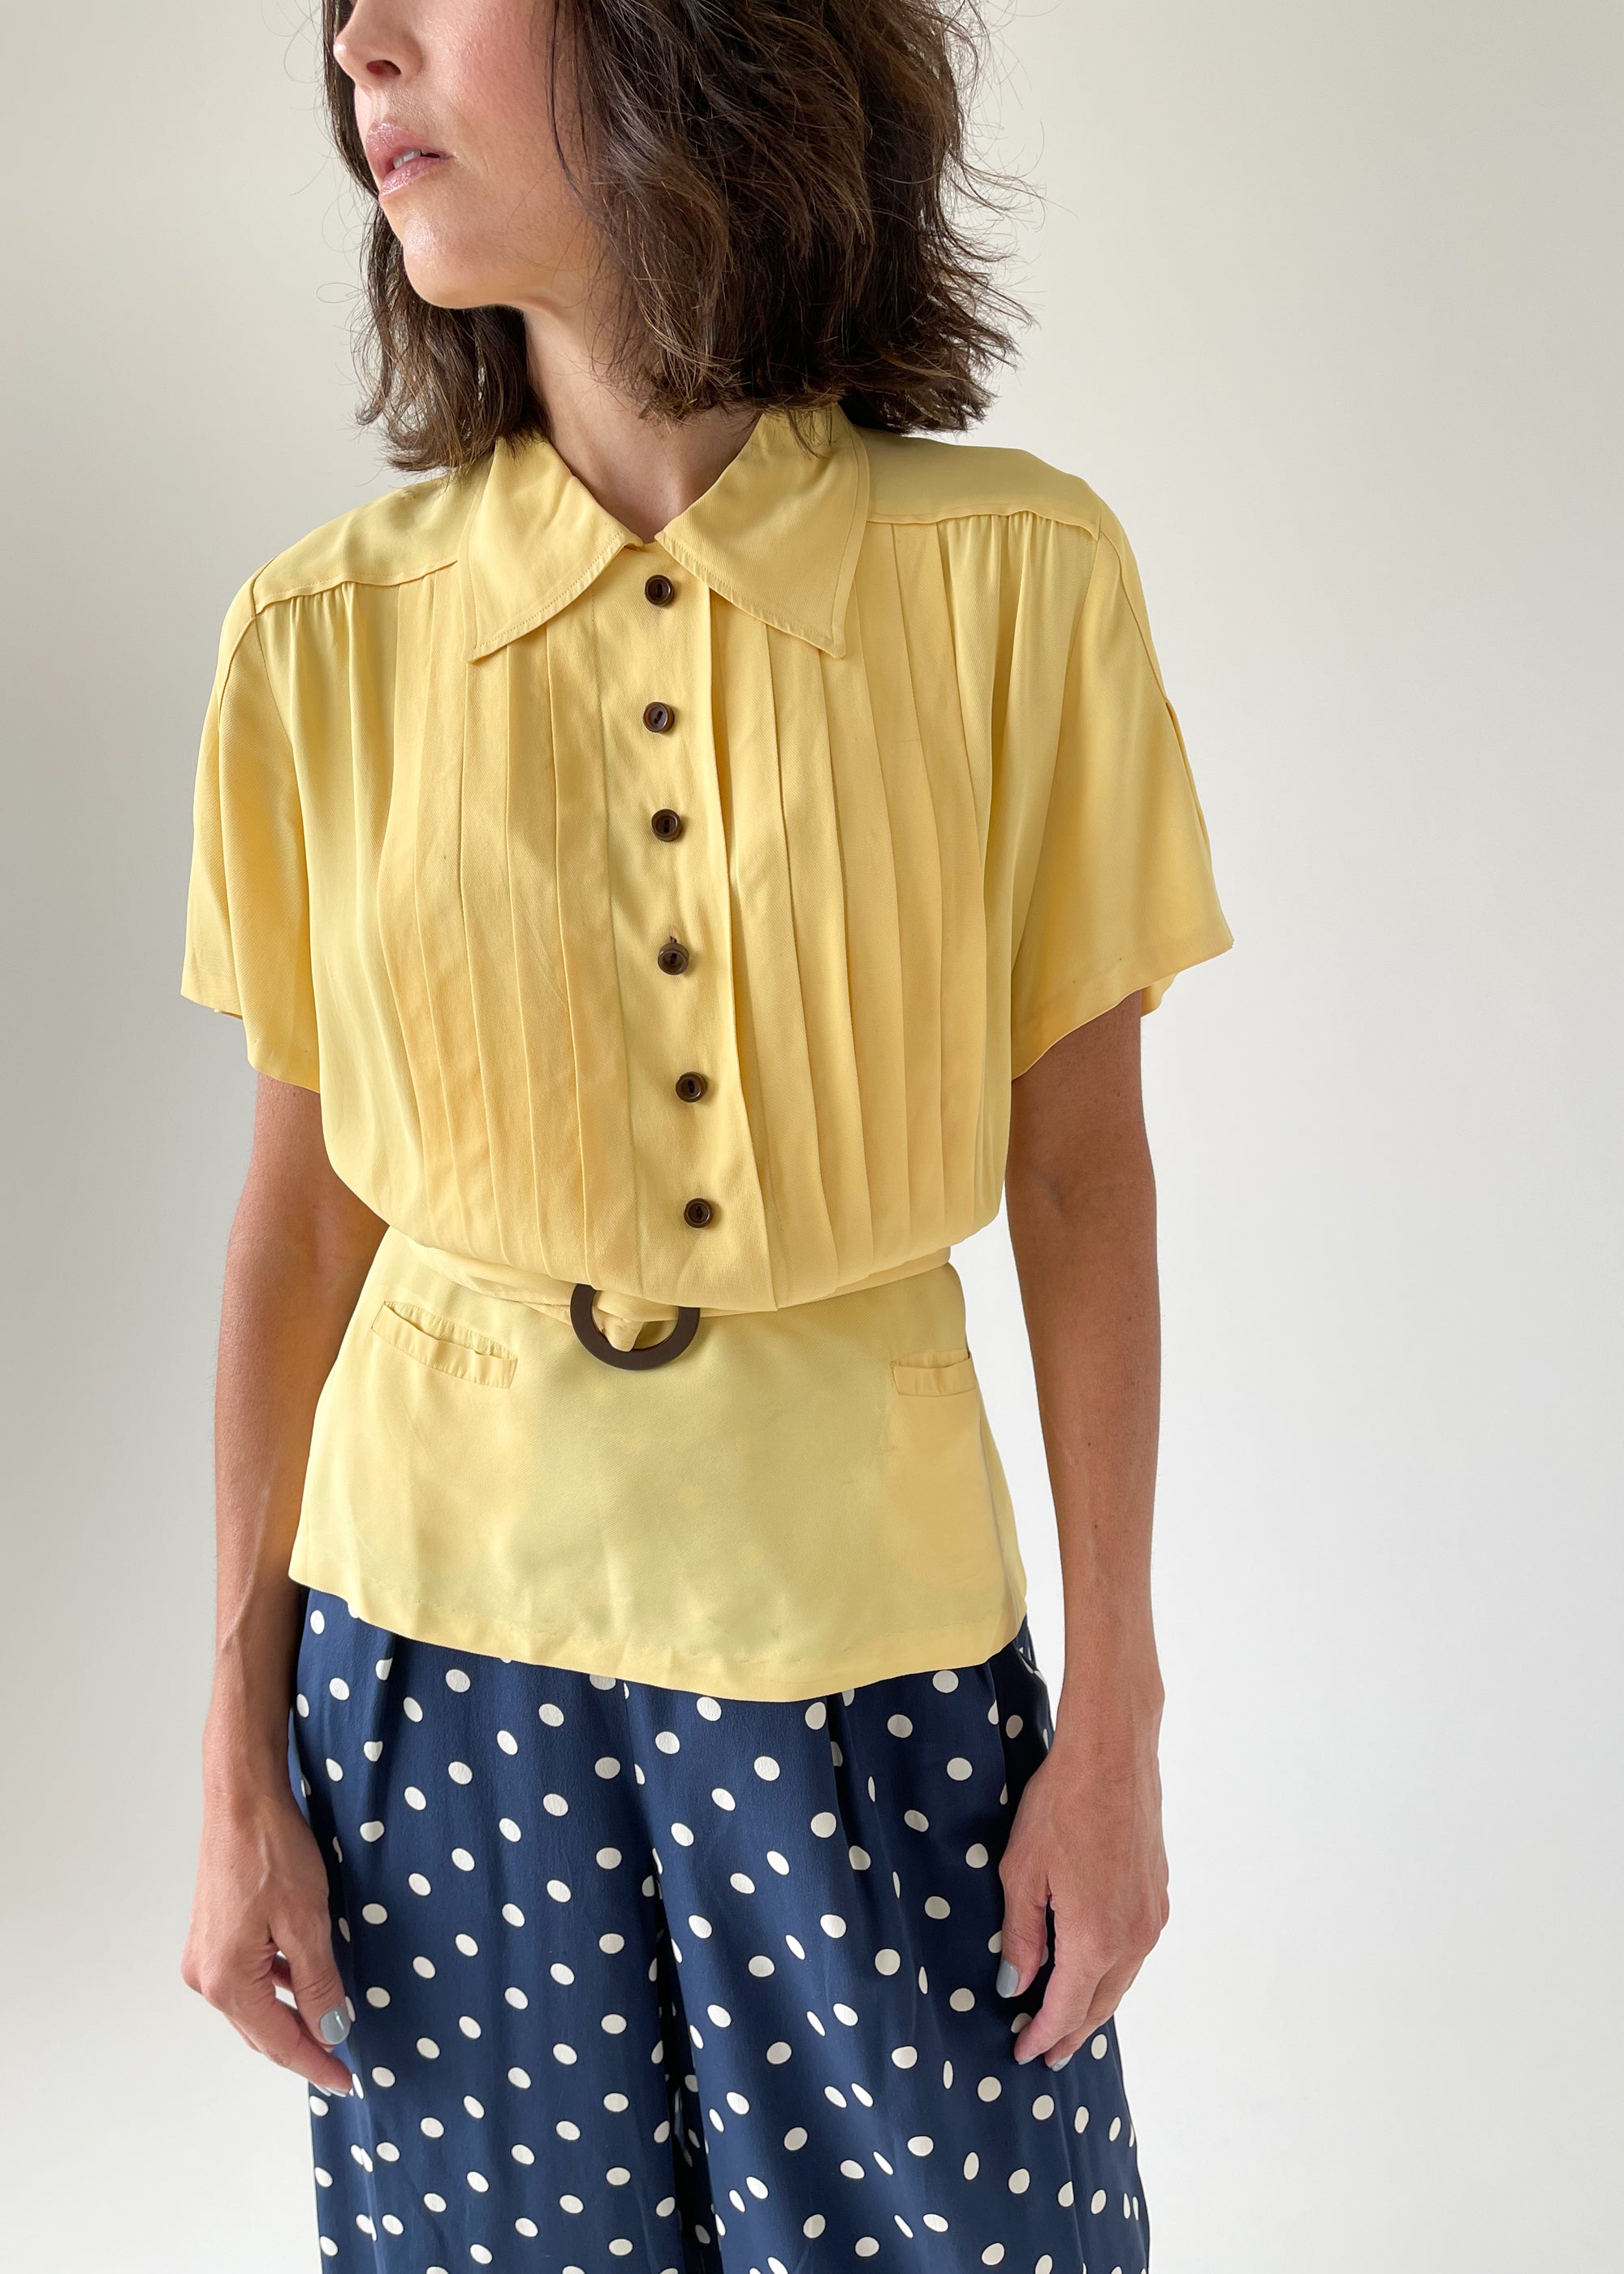 Vintage 1940s Daffodil Yellow Rayon Shirt - Raleigh Vintage